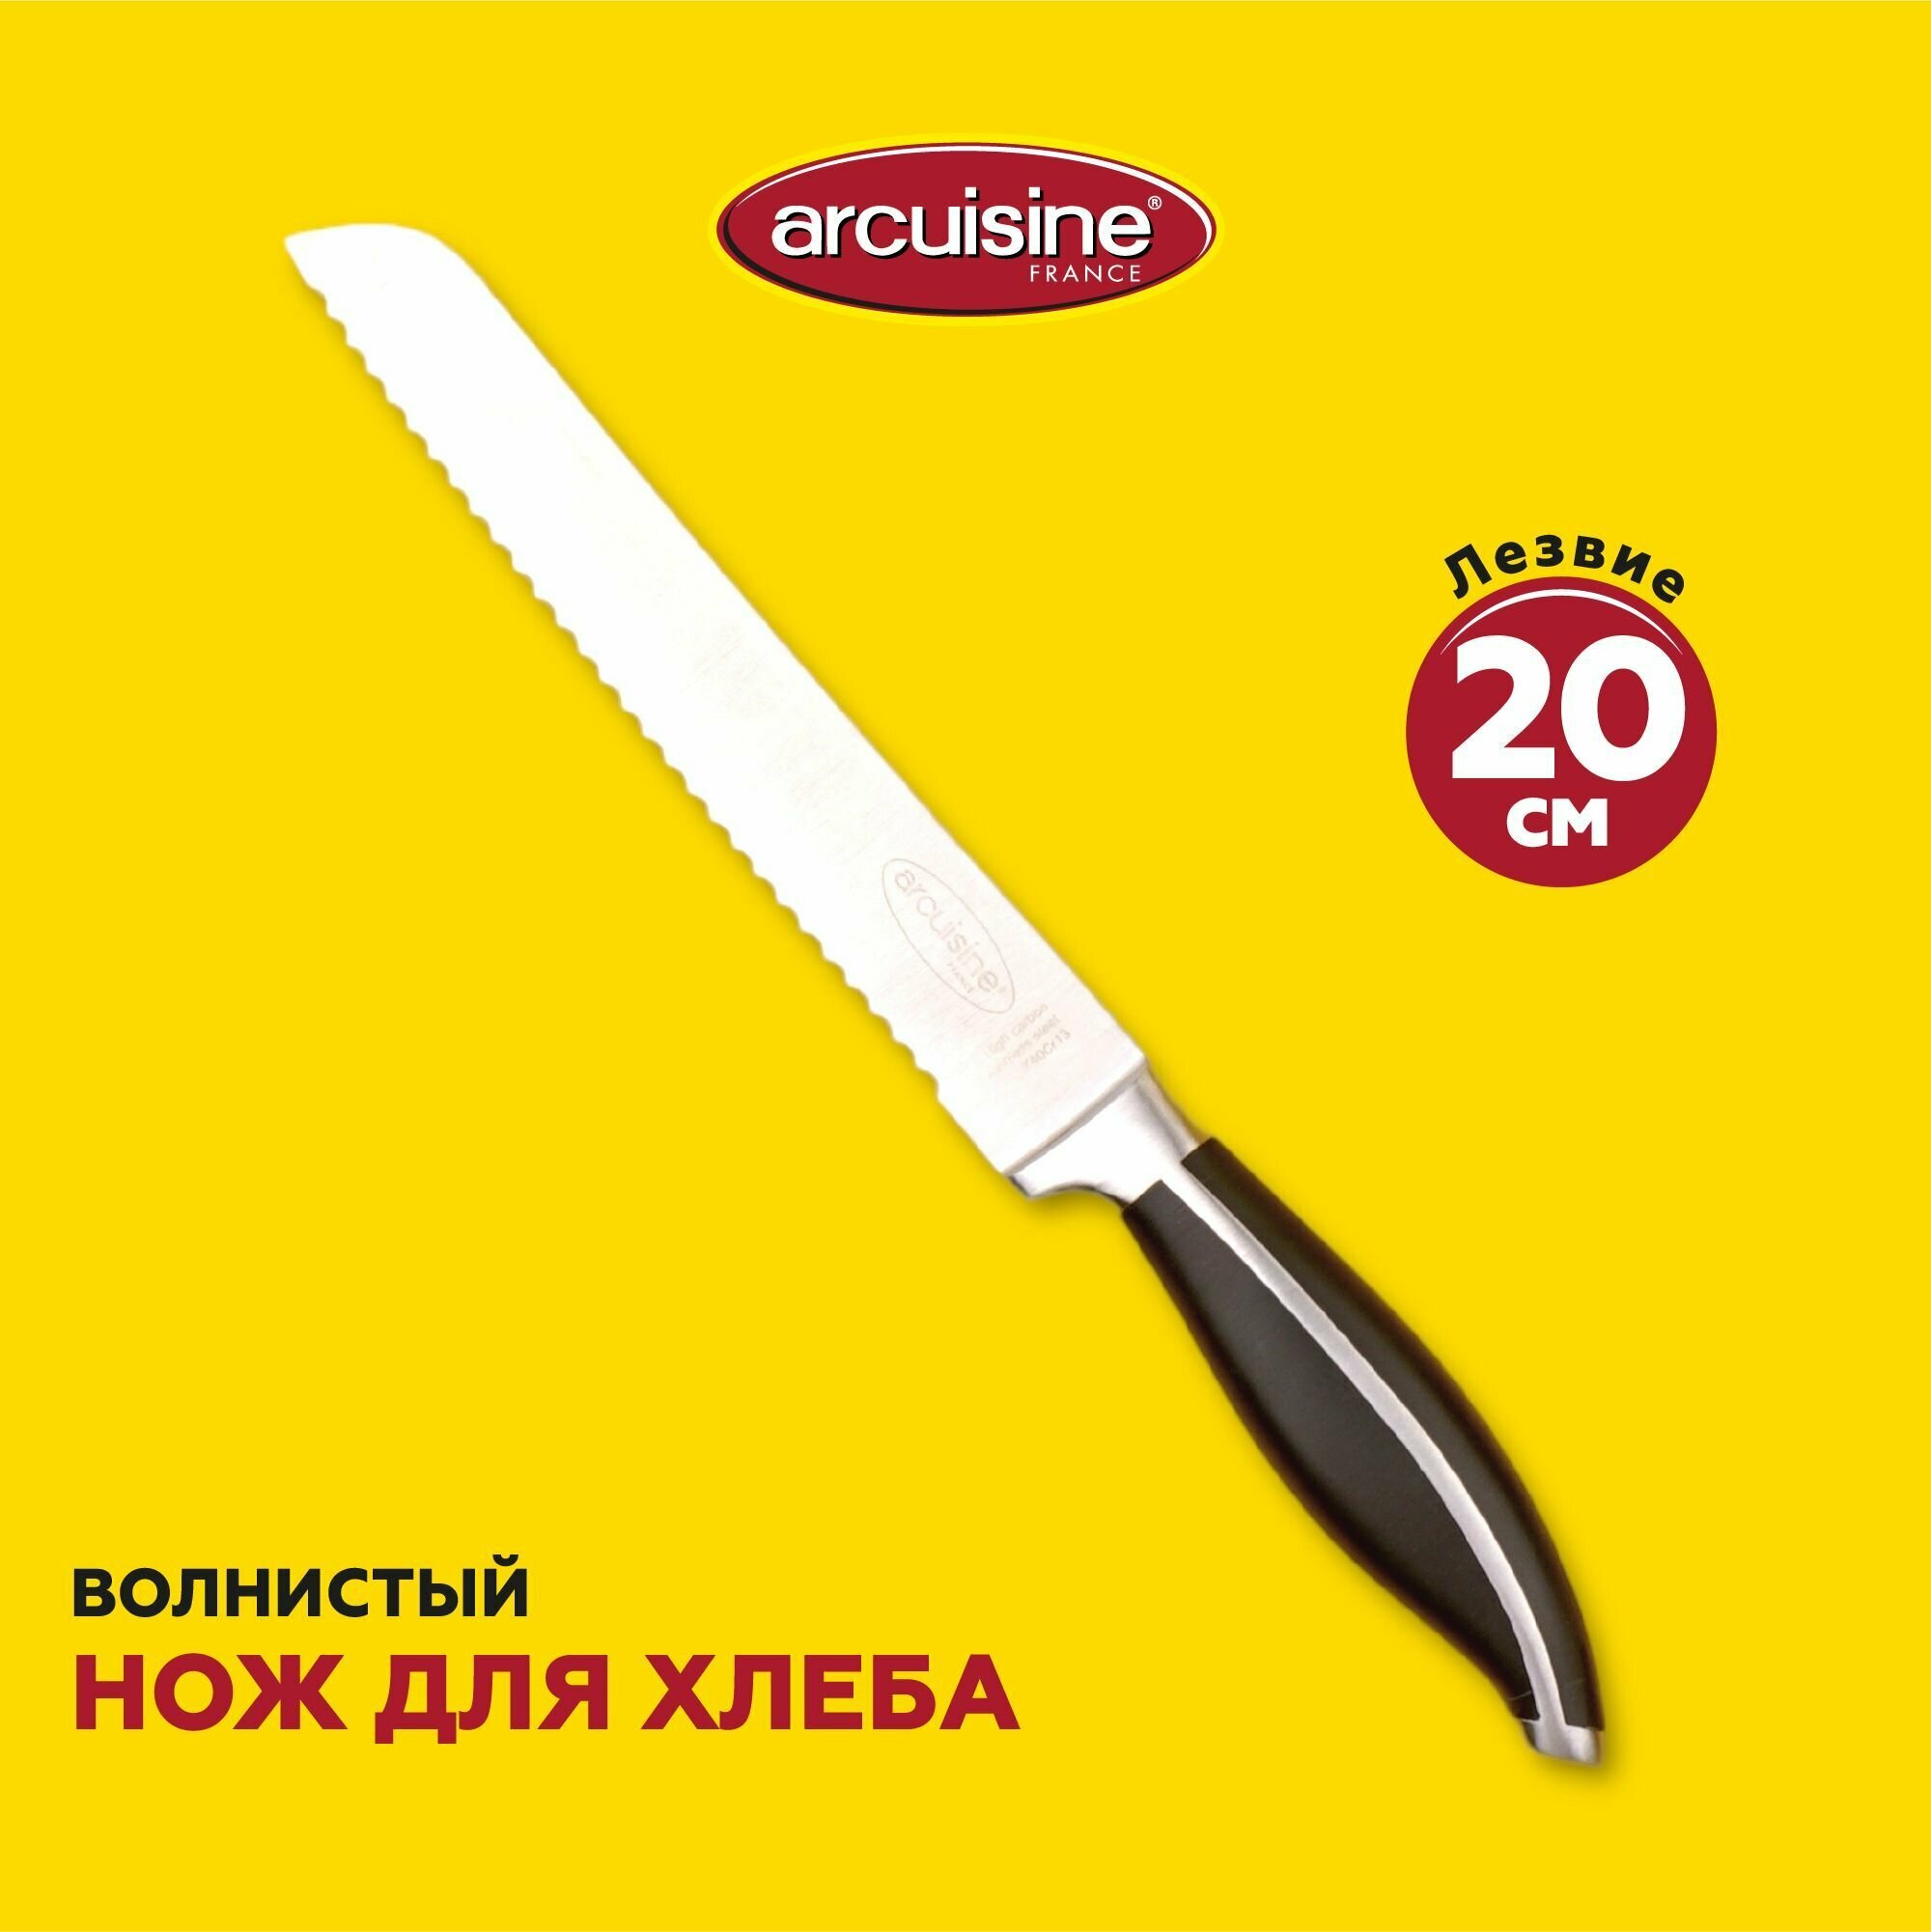 Кухонный нож для хлеба Arcuisine, волнистое лезвие 20 см